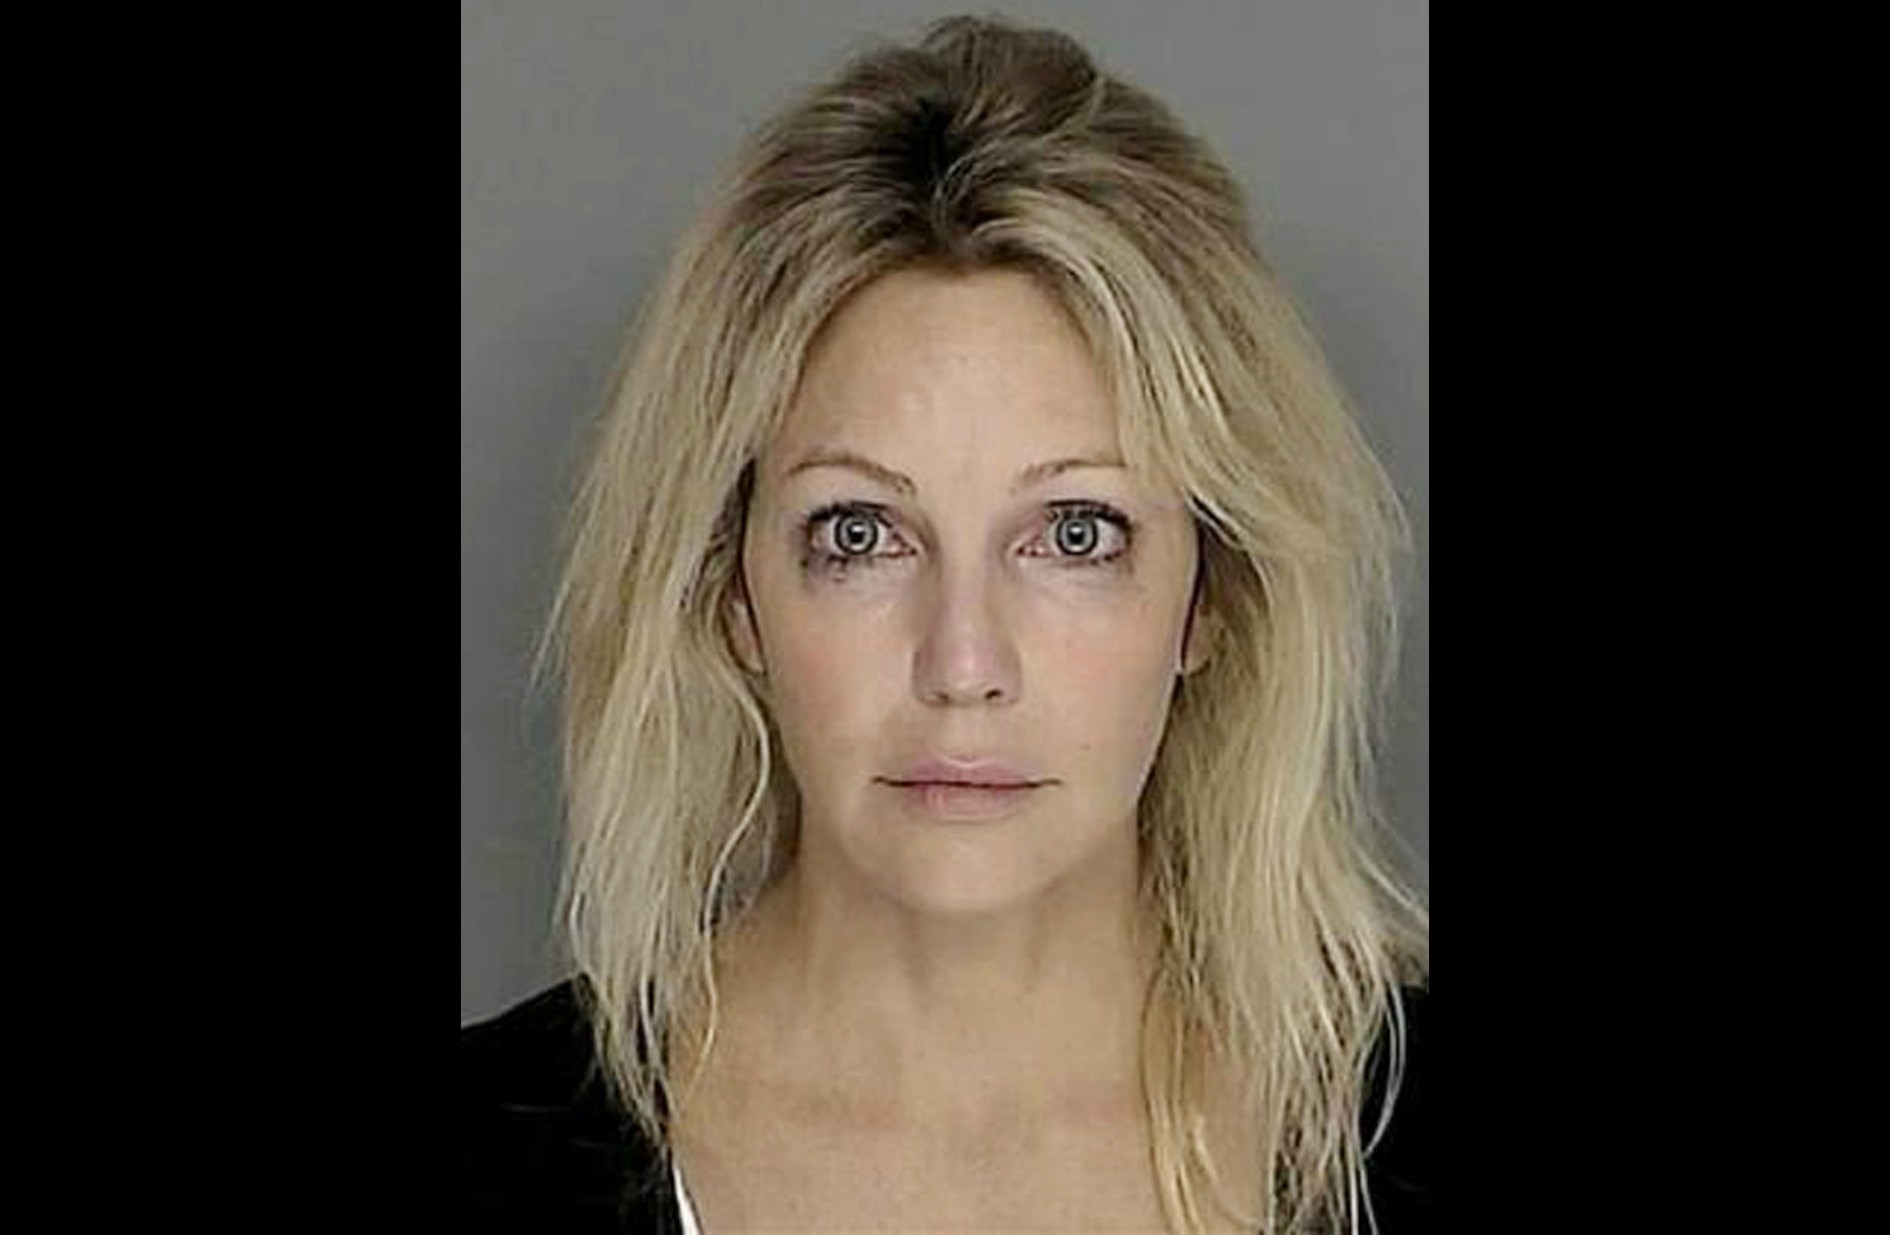 A atriz Heather Locklear em setembro de 2008. Acusação: dirigir sob efeito de álcool e/ou outras drogas. (Foto: Divulgação)